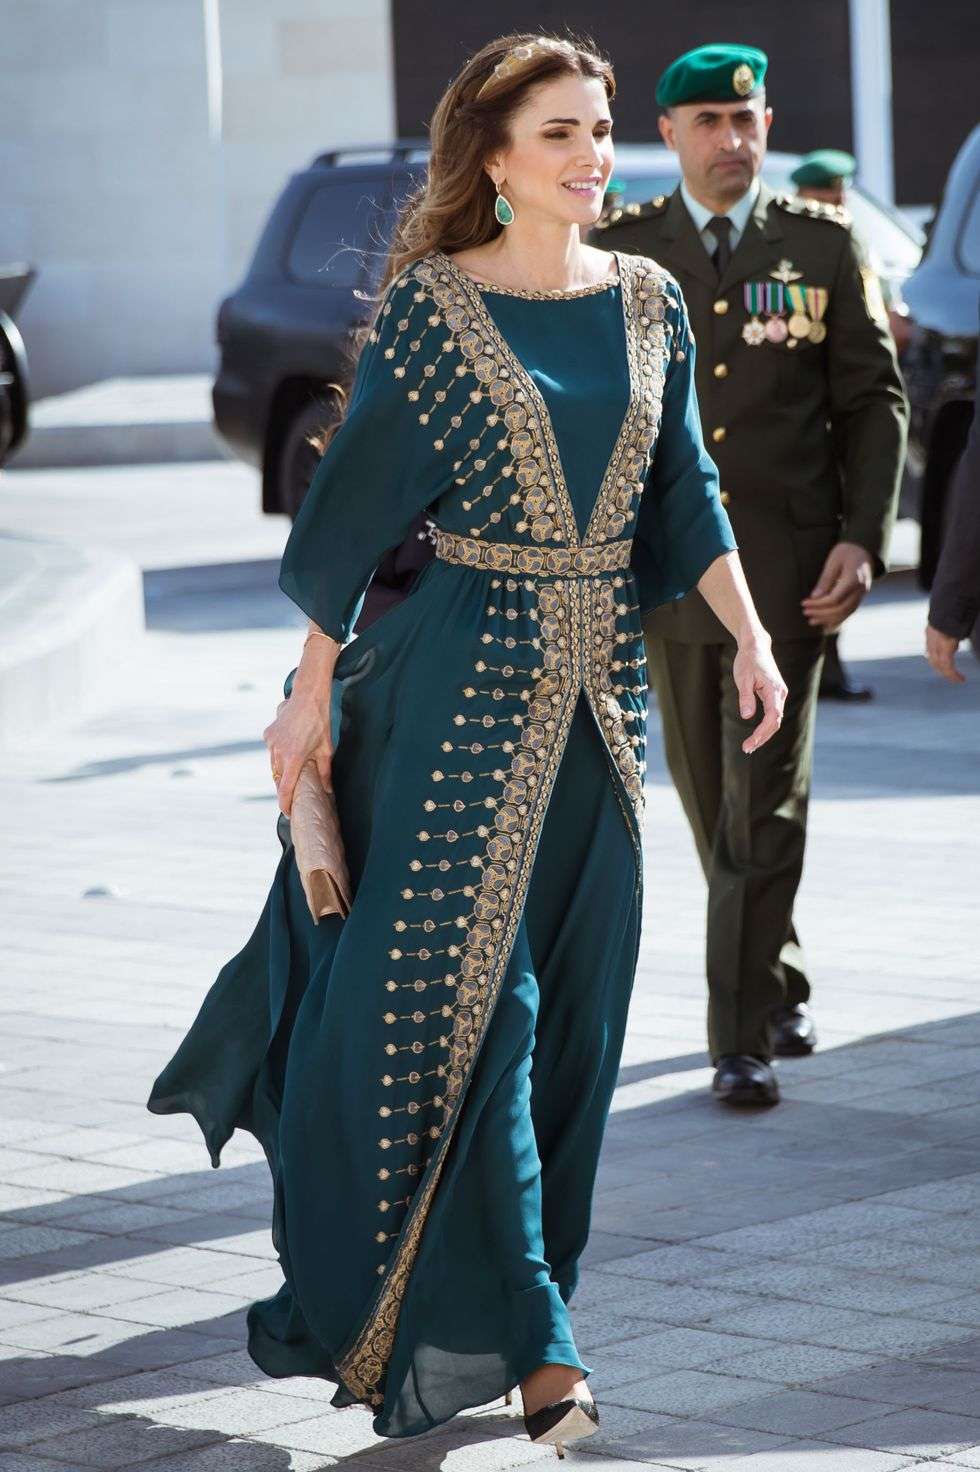 إطلالات مستوحاة من الملكة رانيا العبدالله تناسب العروس المحجبة